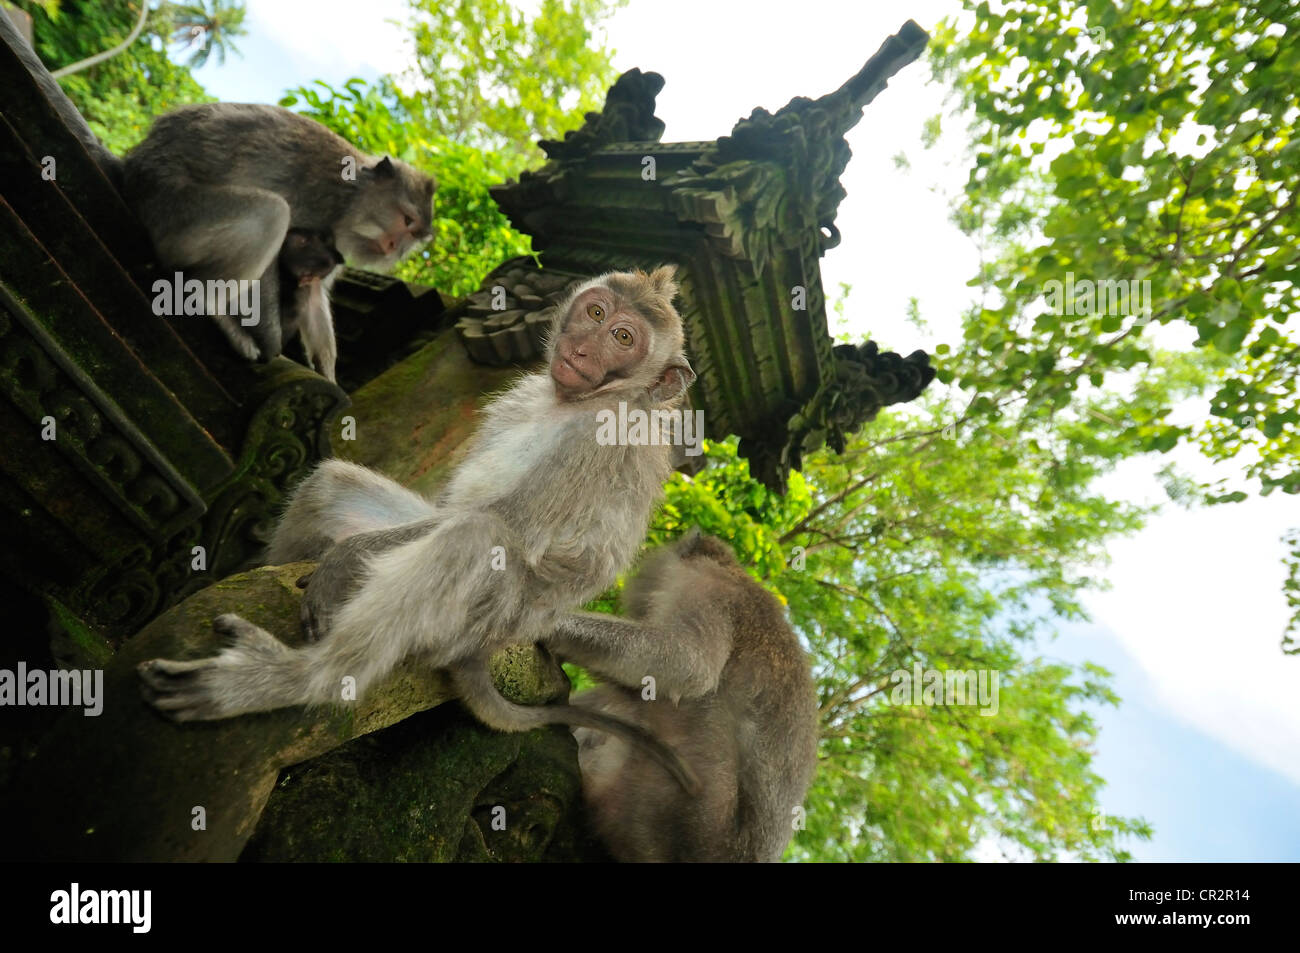 Long-tailed macaque Macaca fascicularis, Cercopithecidae, Ubud Monkey forest, Ubud, Bali, Indonesia, Asia Stock Photo